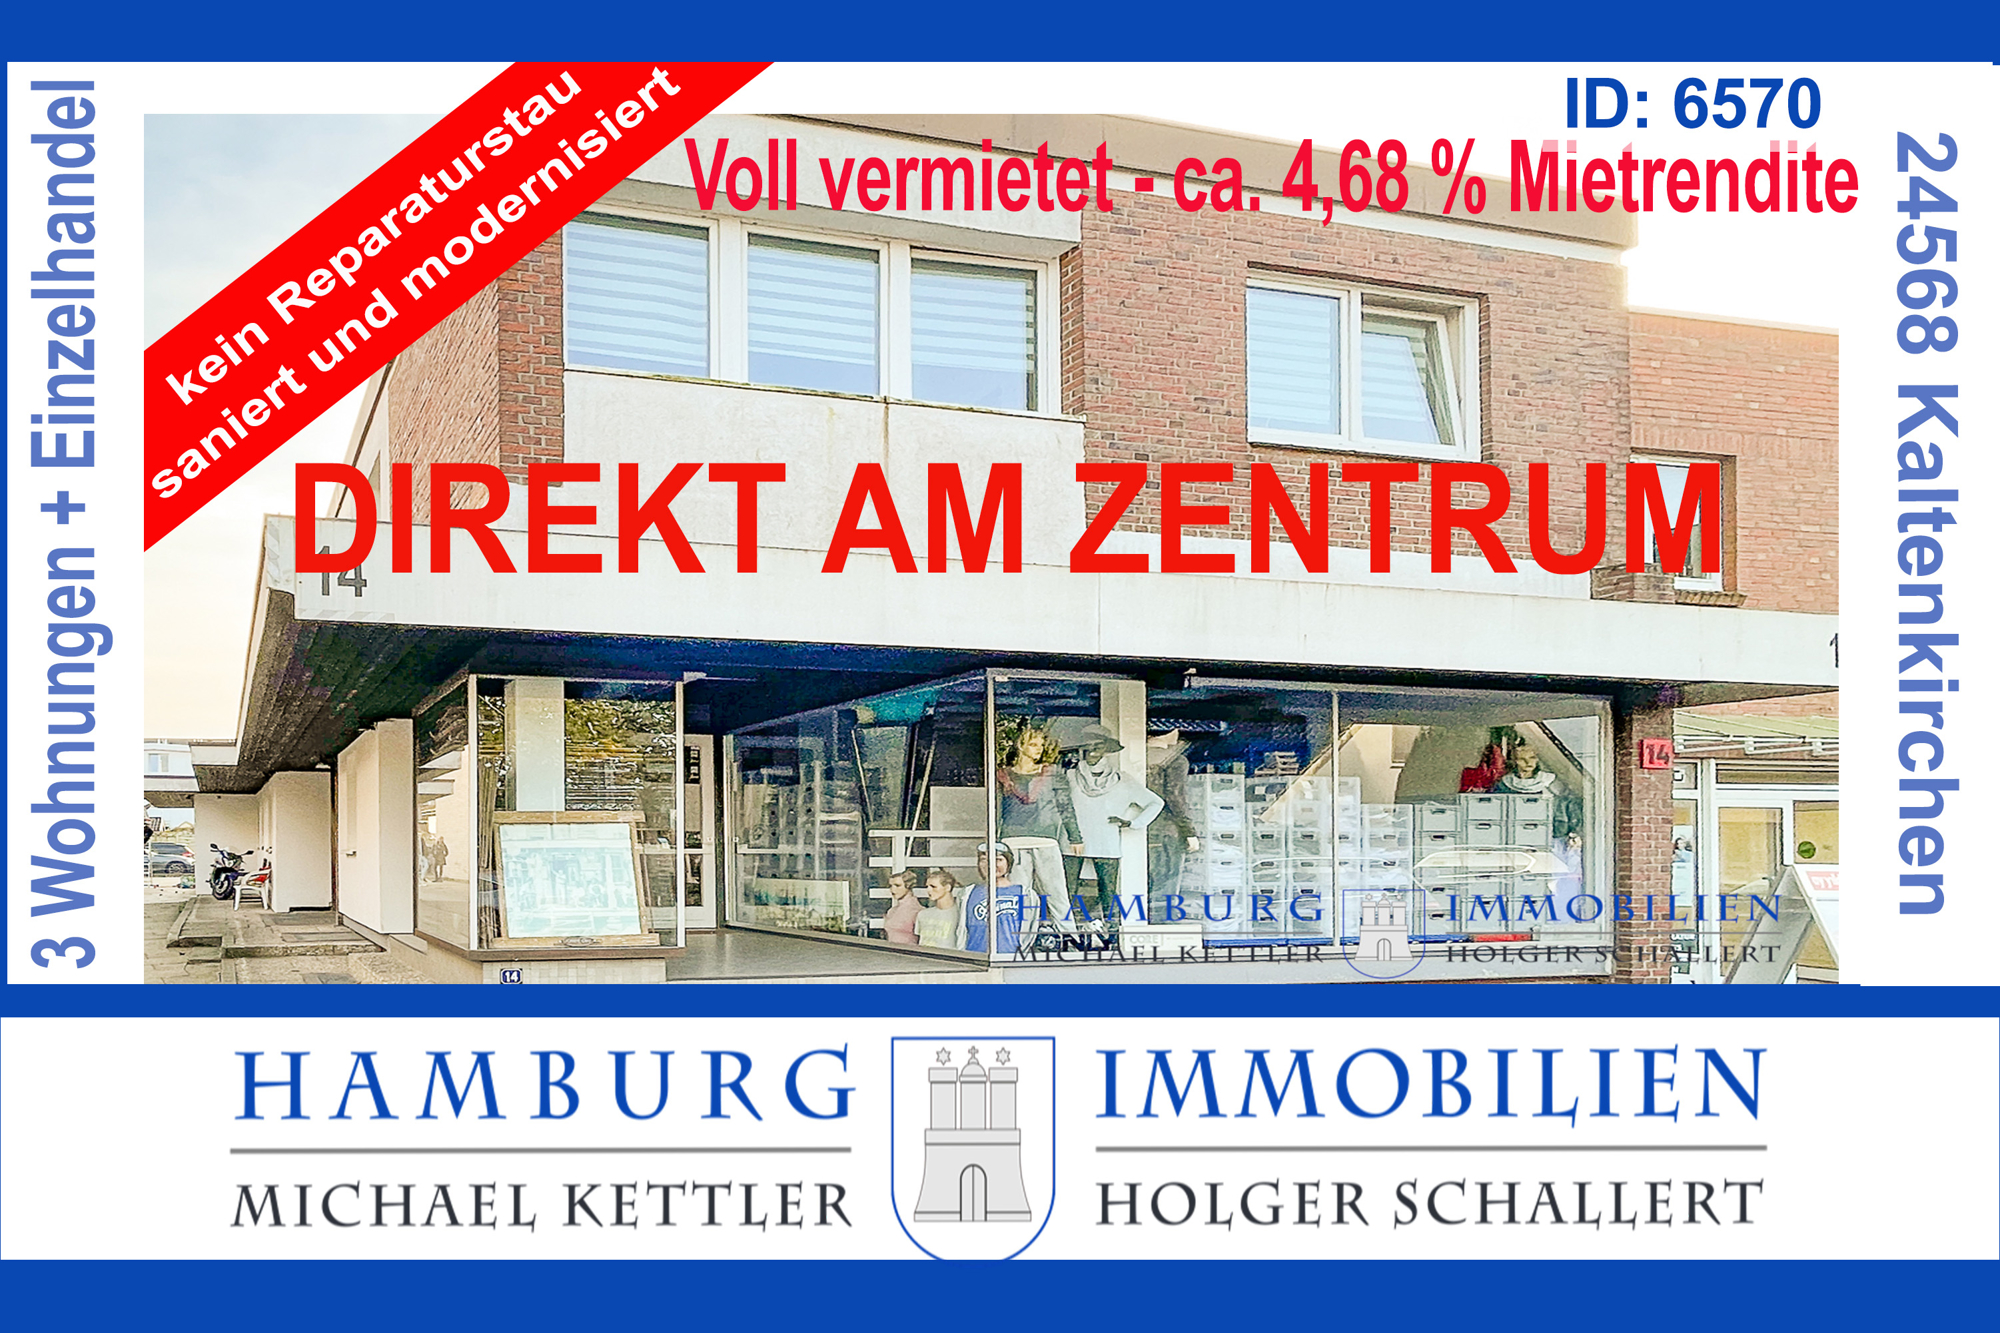 Wohn-/Geschäftshaus - Zentrum Kaltenkirchen - ca. 482 m² Gesamtfläche - Grundstück ca. 733 m²